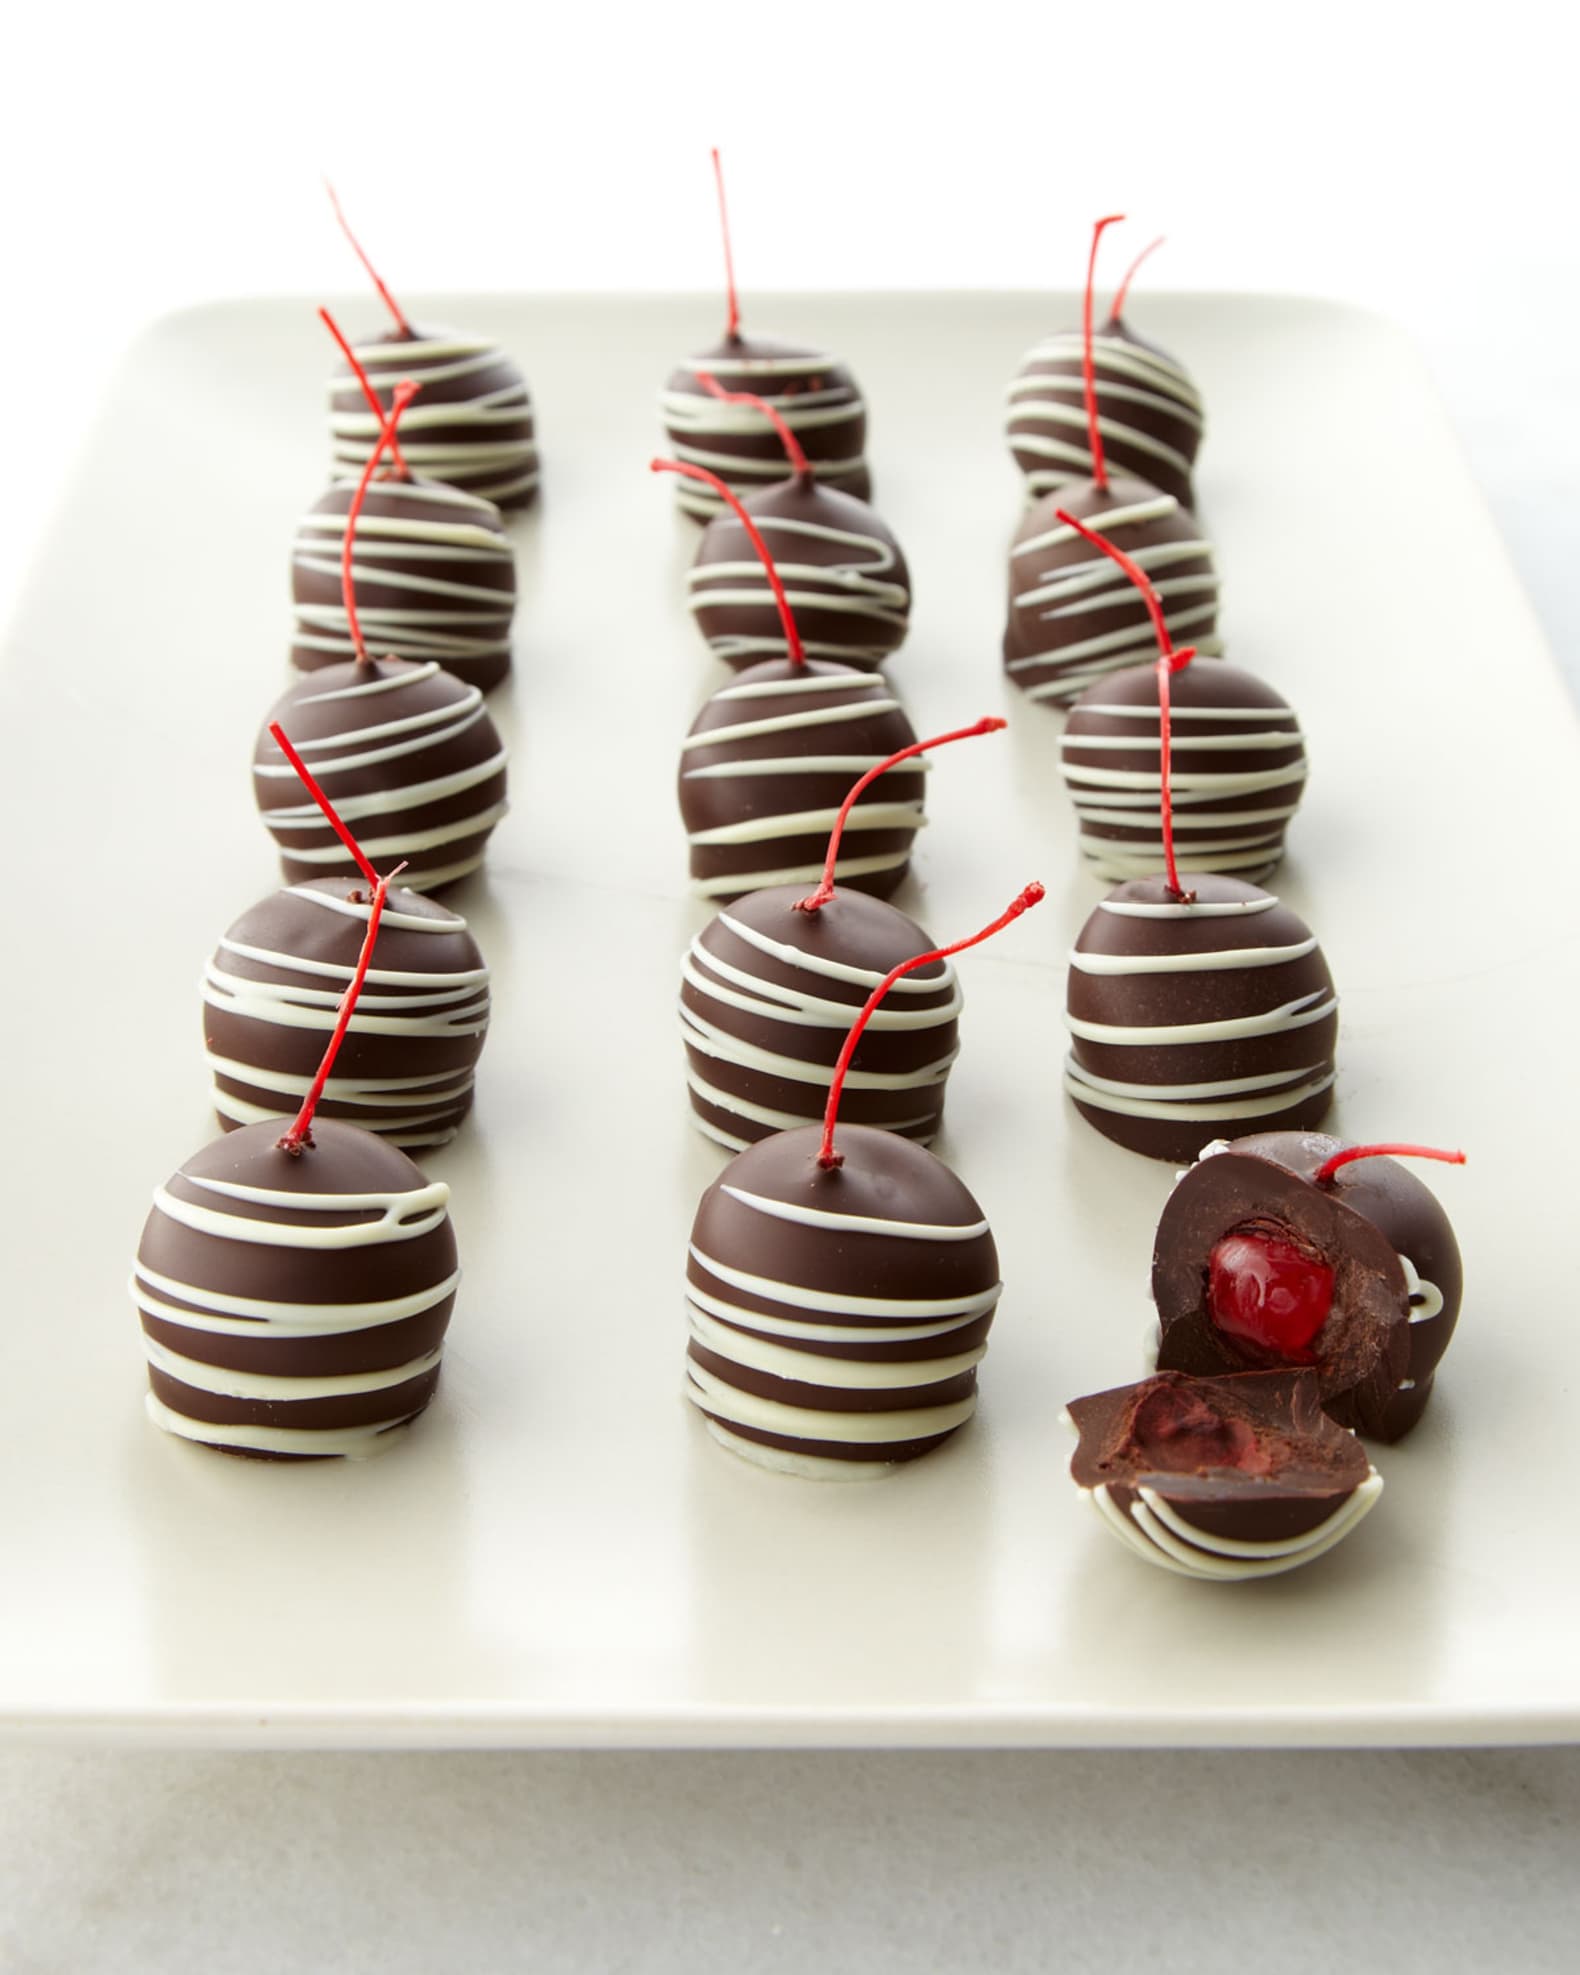 Chocolate Covered Company Dark-Chocolate Maraschino Cherries